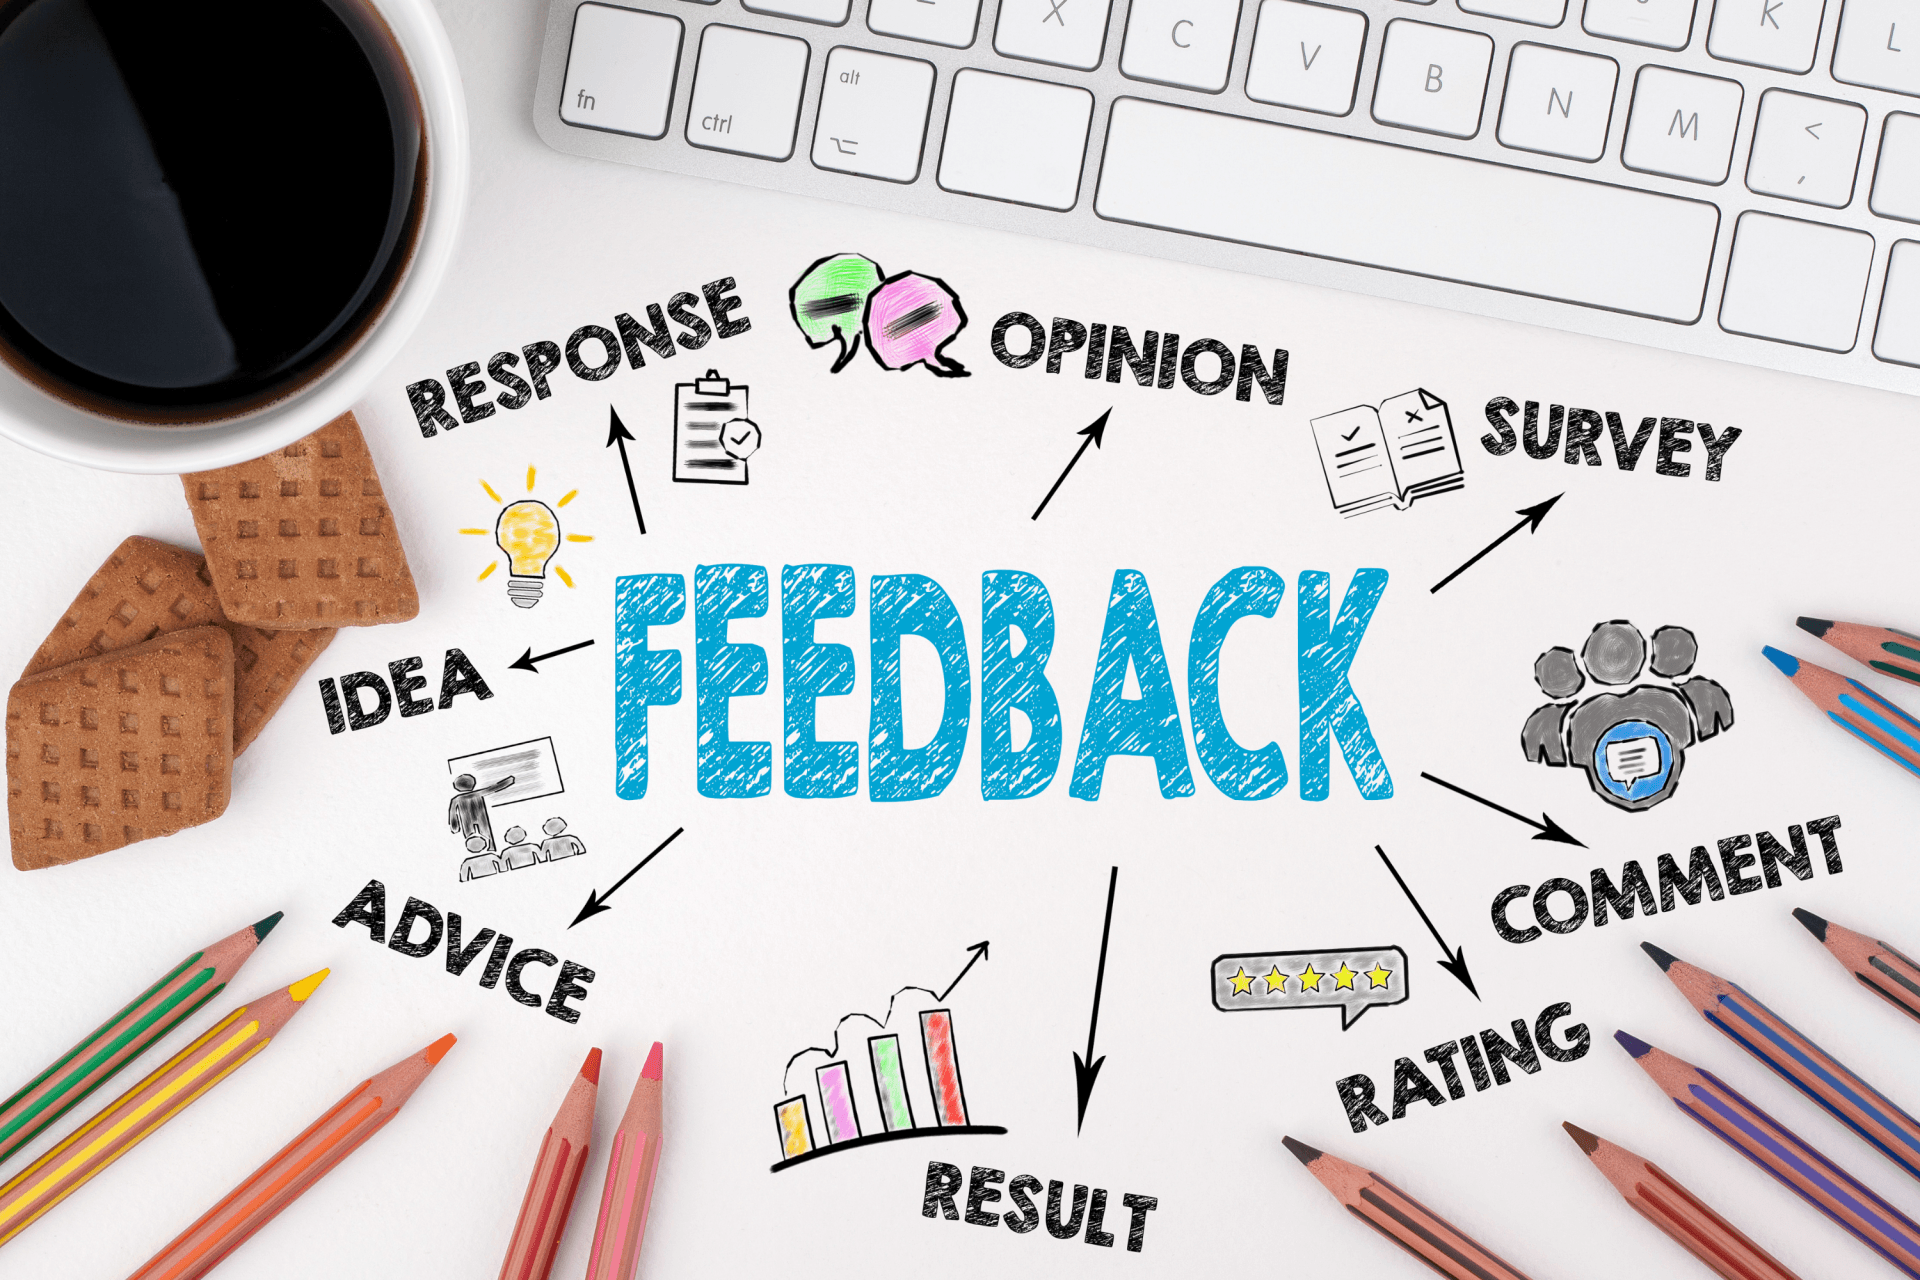 patient retention ideas get feedback